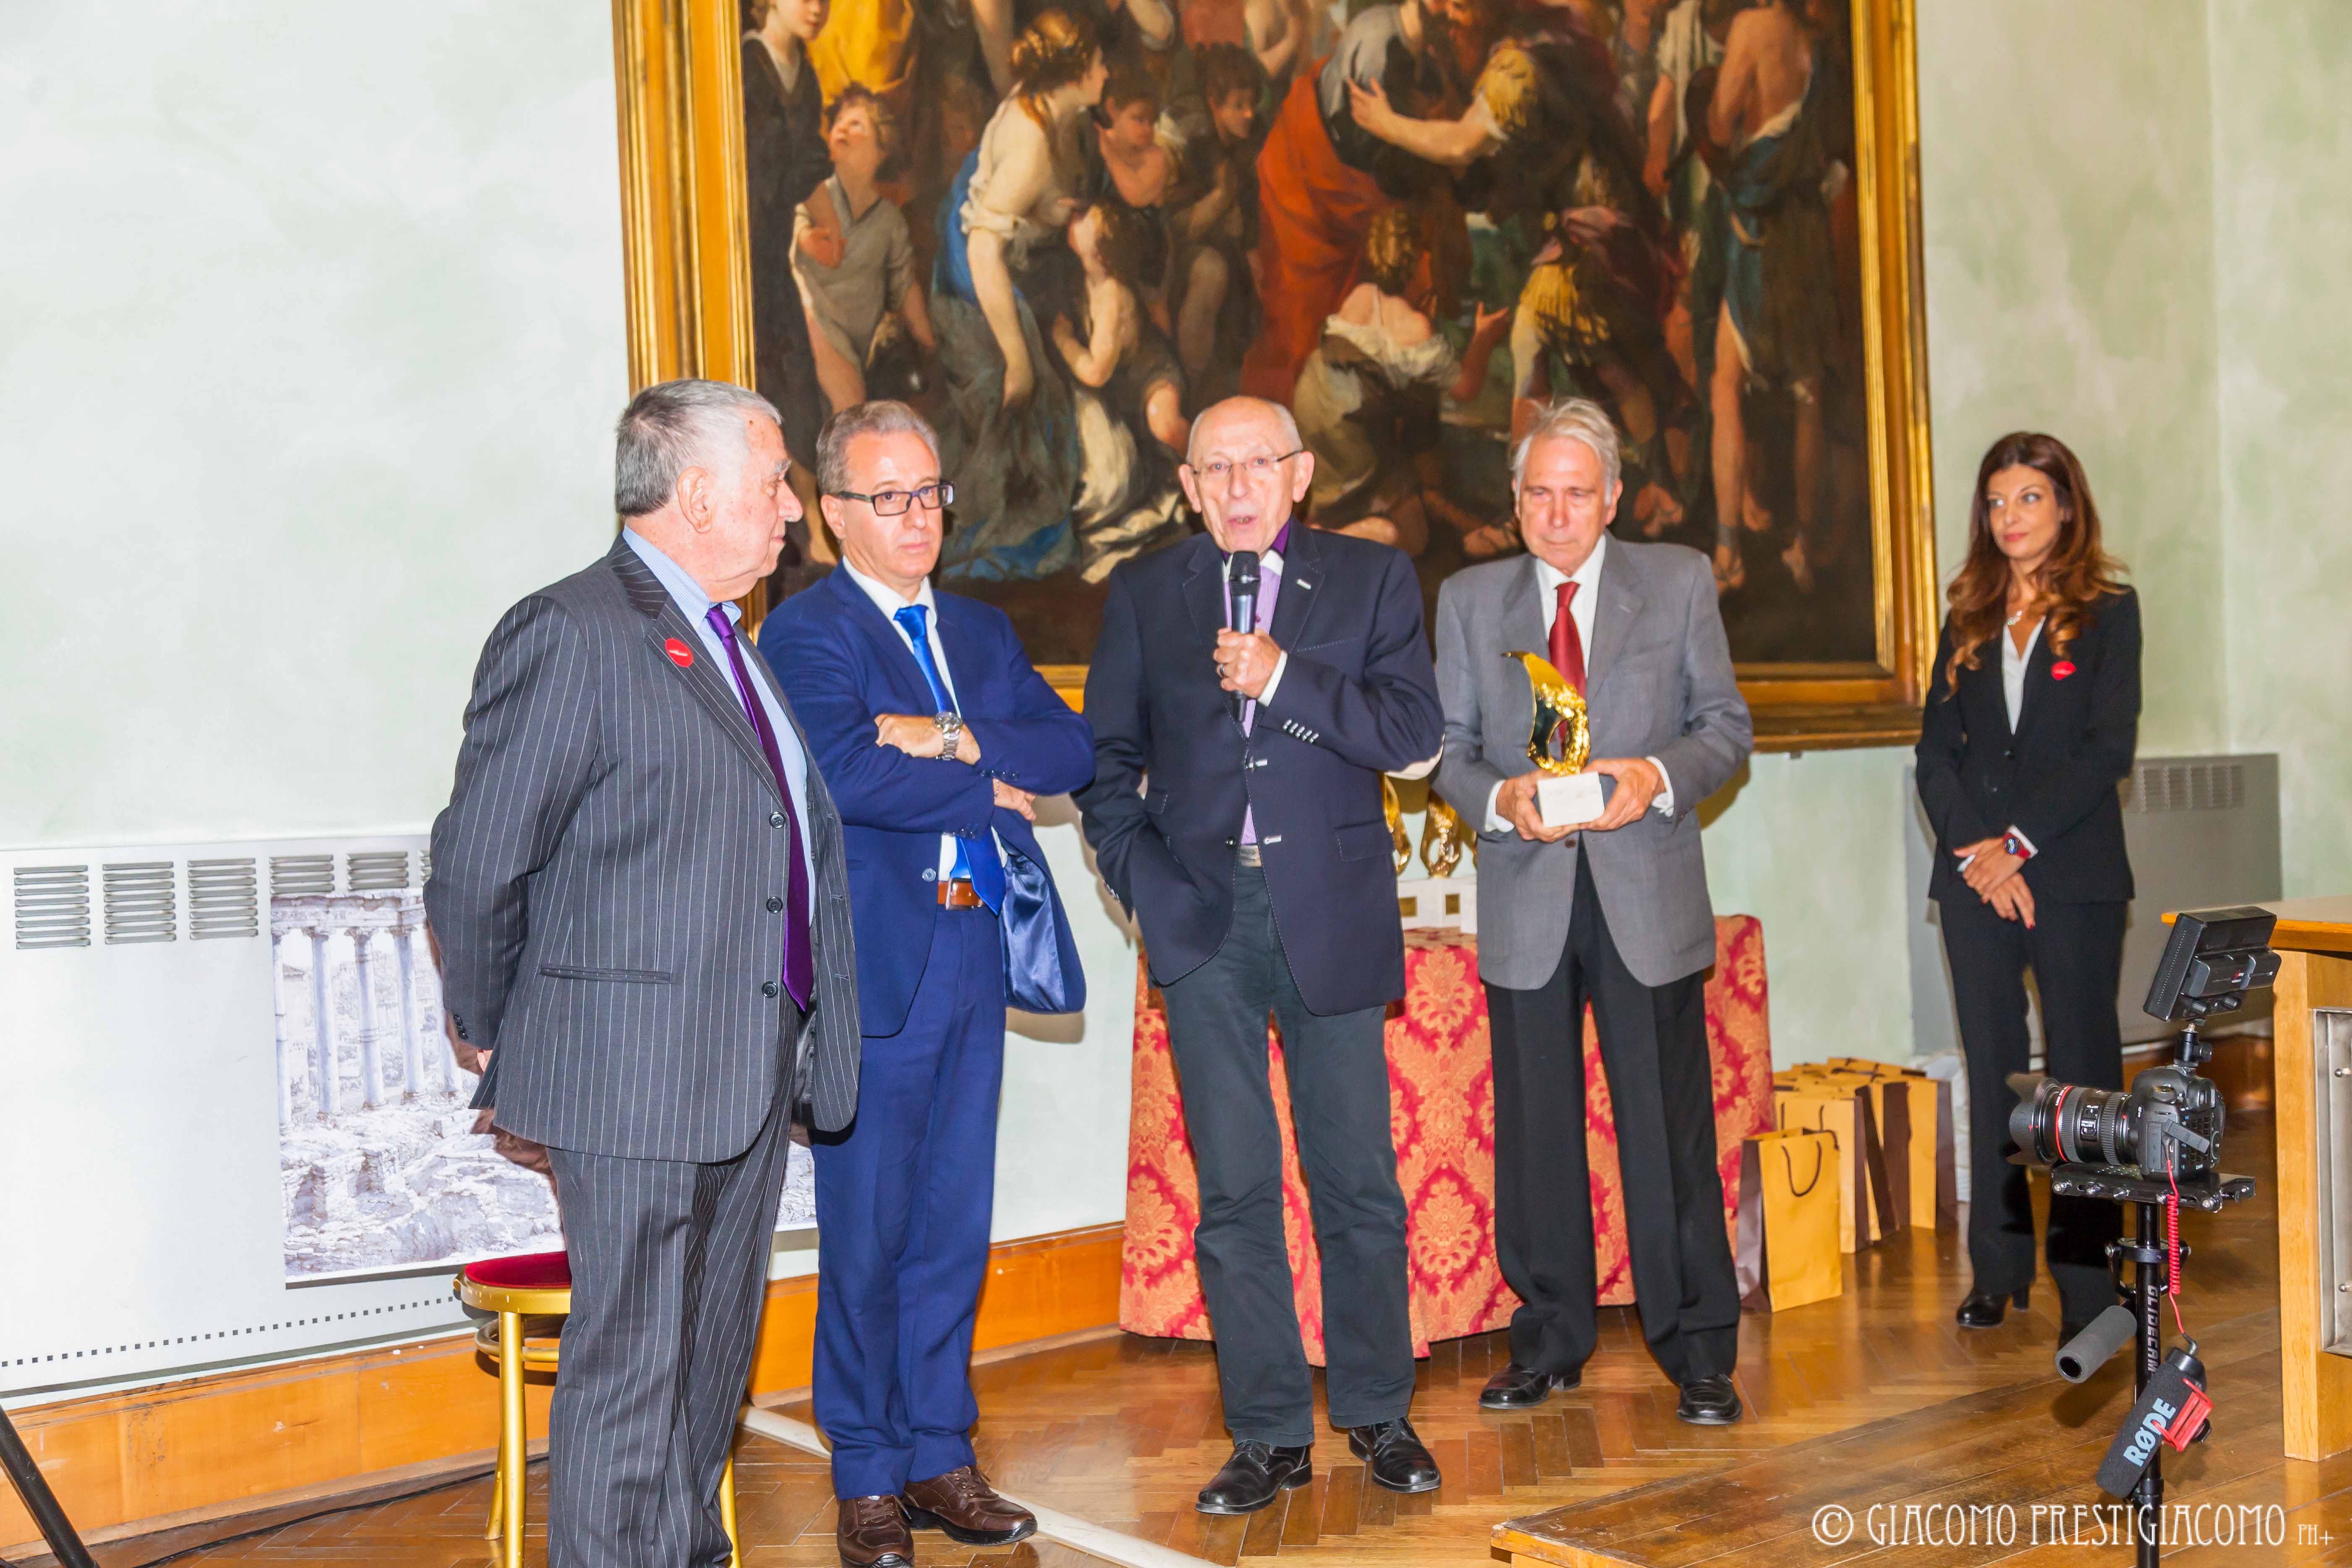 Il Premio Europeo Capo Circeo, arrivato alla sua XXXV edizione, consegnato  a personaggi di spicco del mondo della cultura e dell'arte.